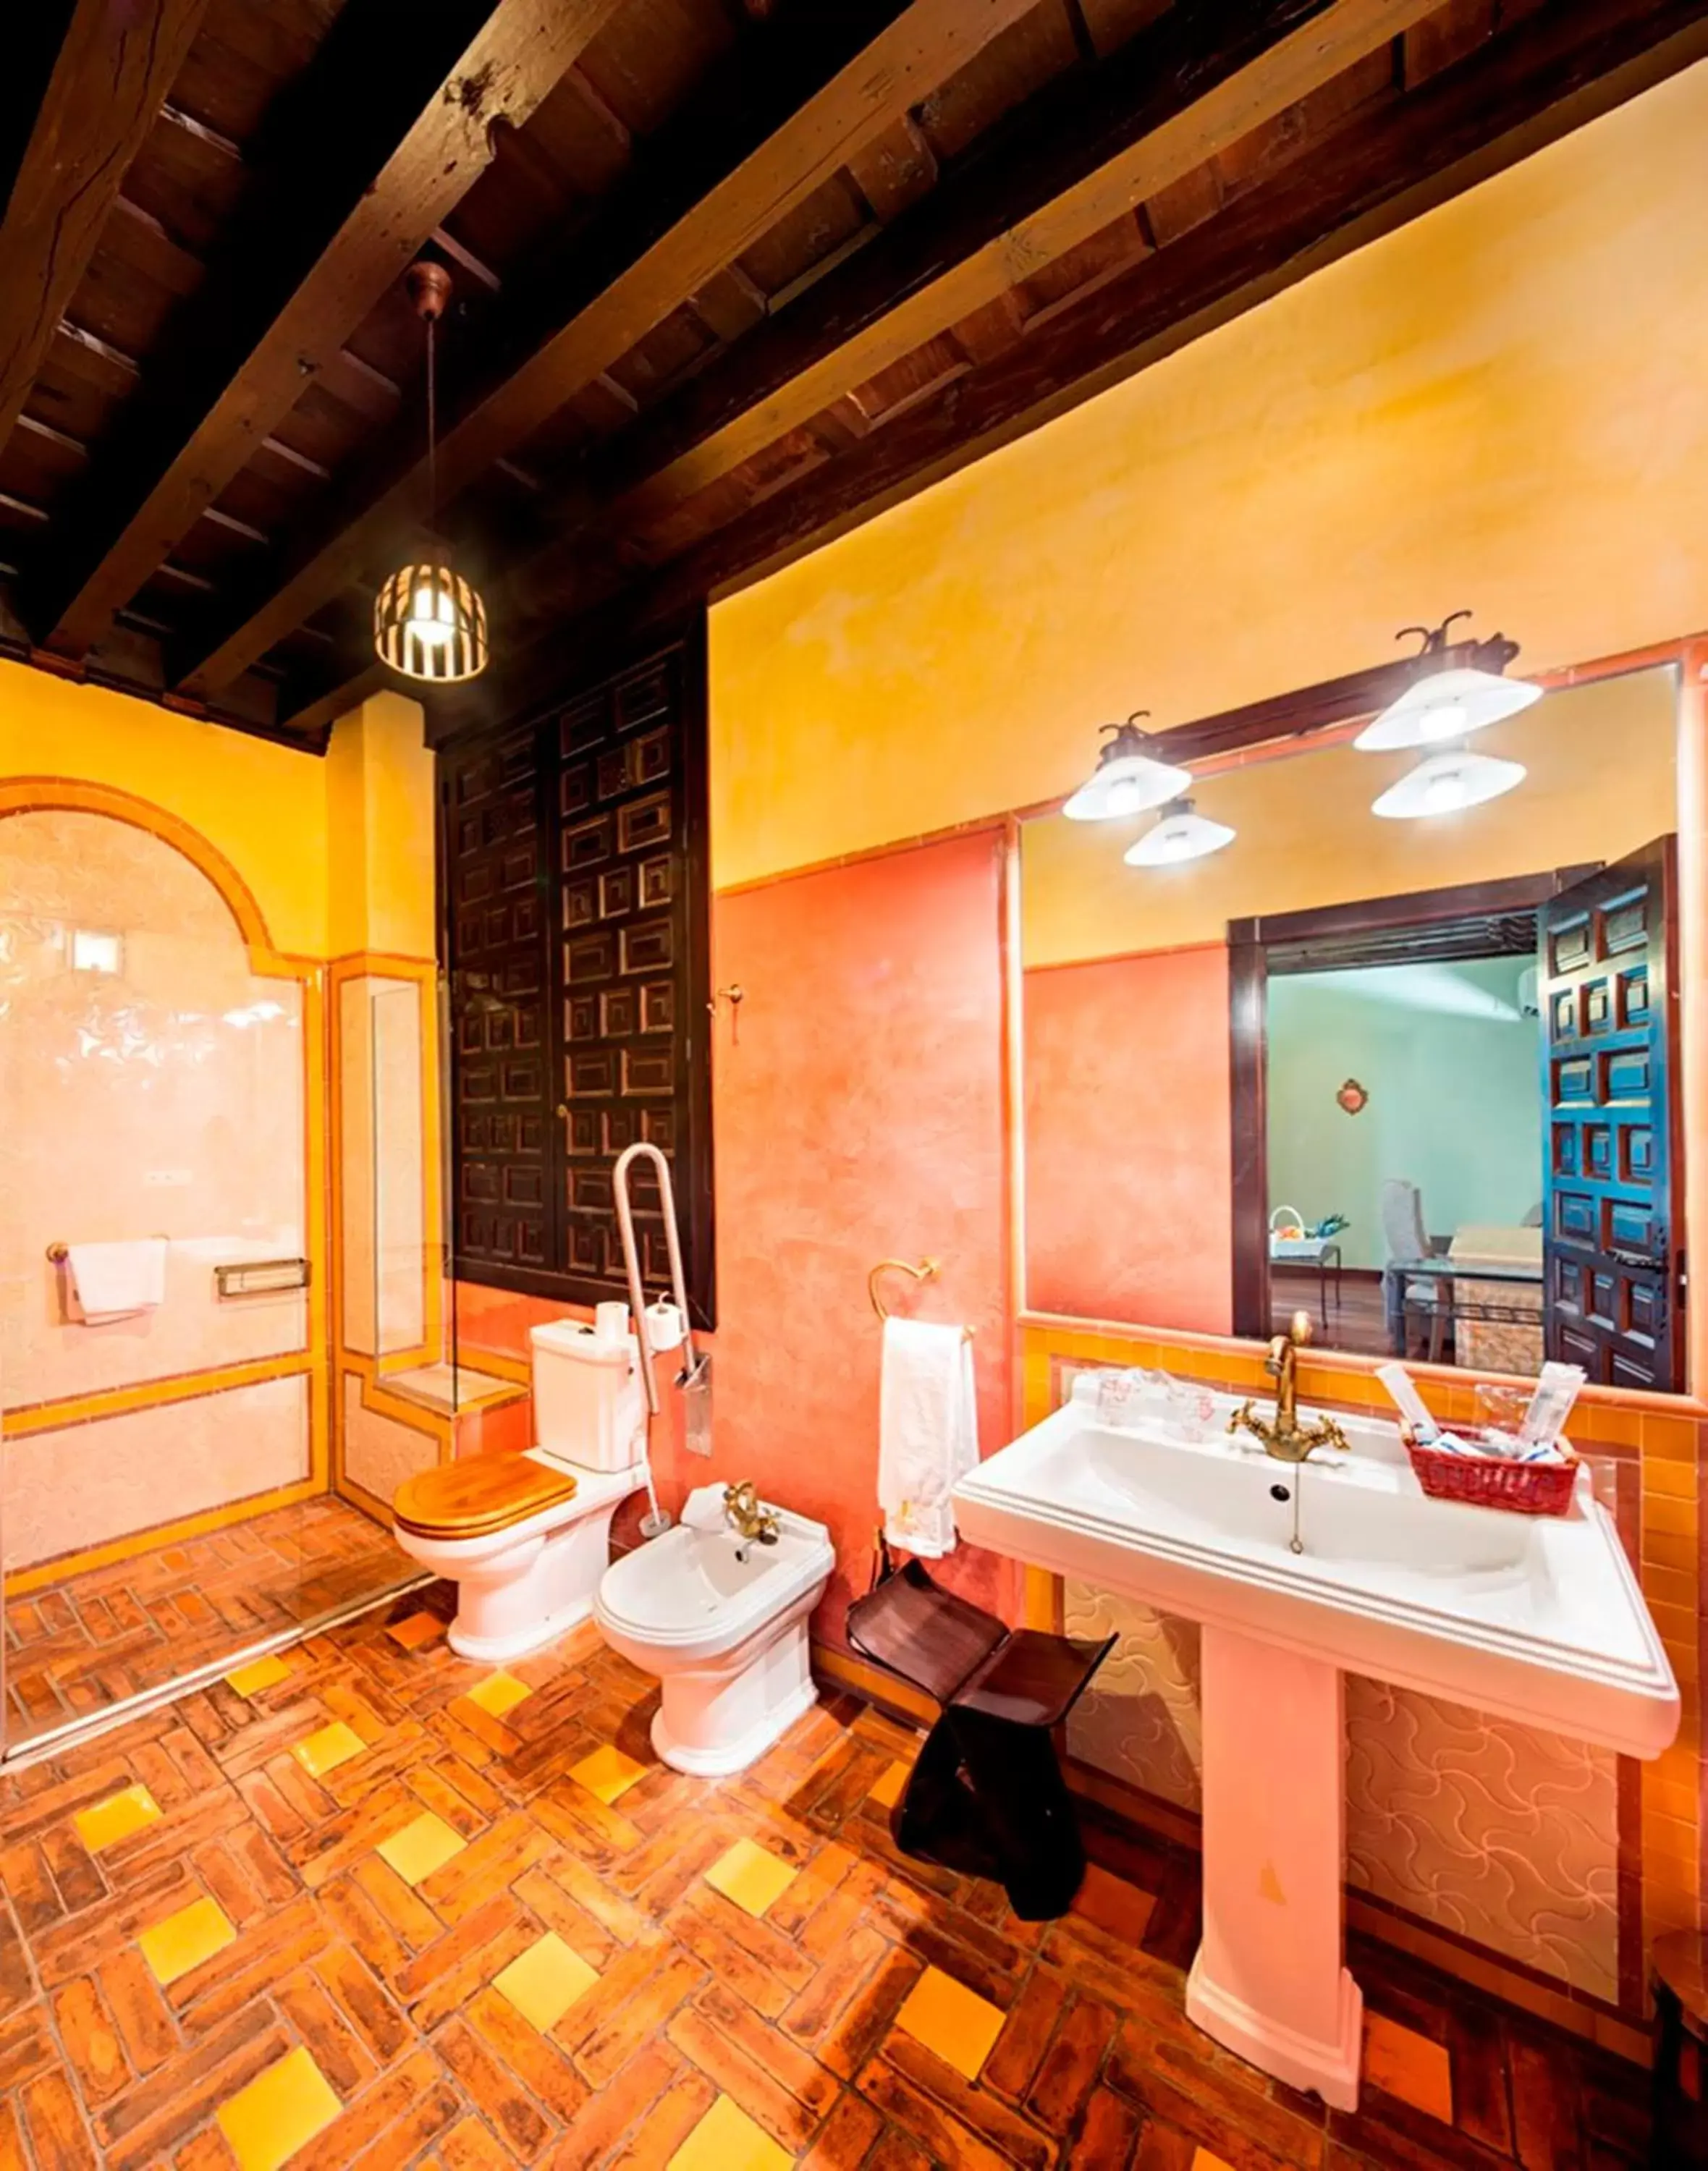 Bathroom in Palacio de Mariana Pineda